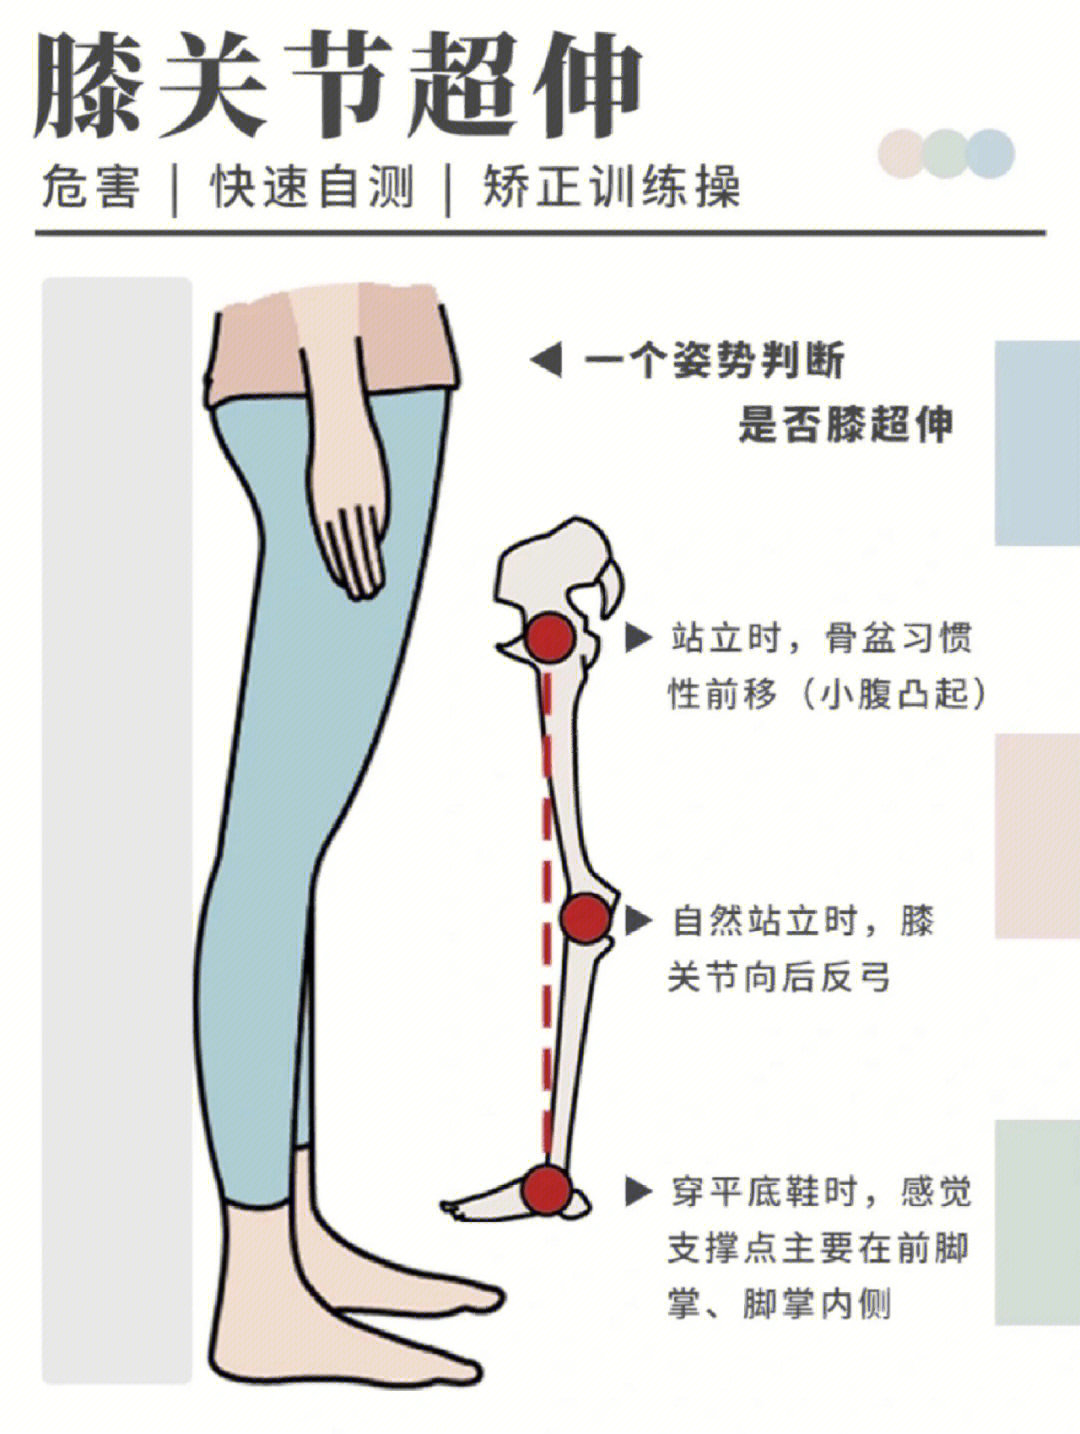 膝盖超伸导致的不良体态